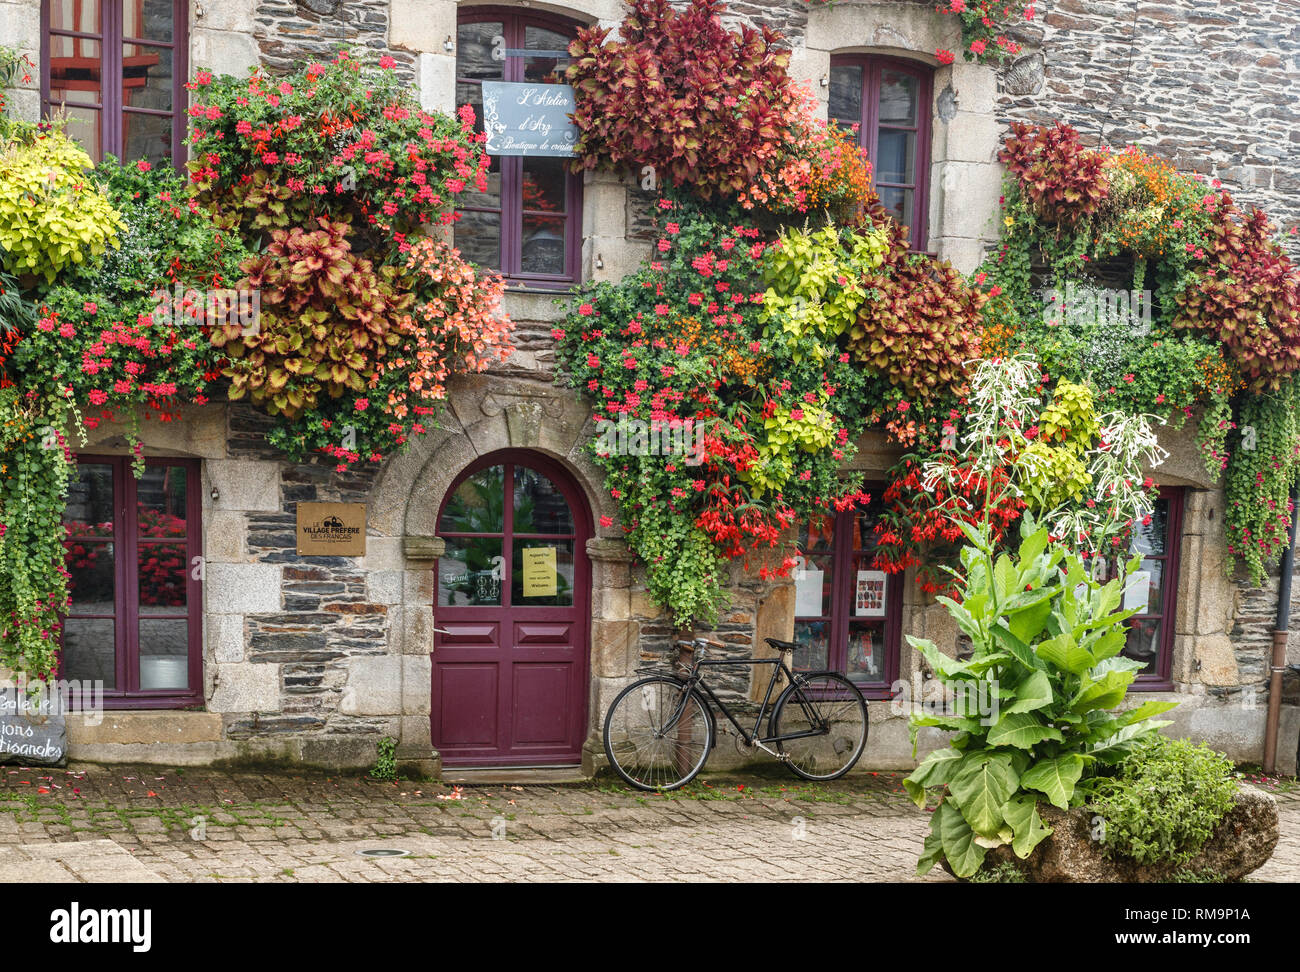 France, Morbihan, Rochefort en Terre, labelled Les Plus Beaux Villages de France (The Most Beautiful Villages of France), Place du Puits, vegetated ho Stock Photo